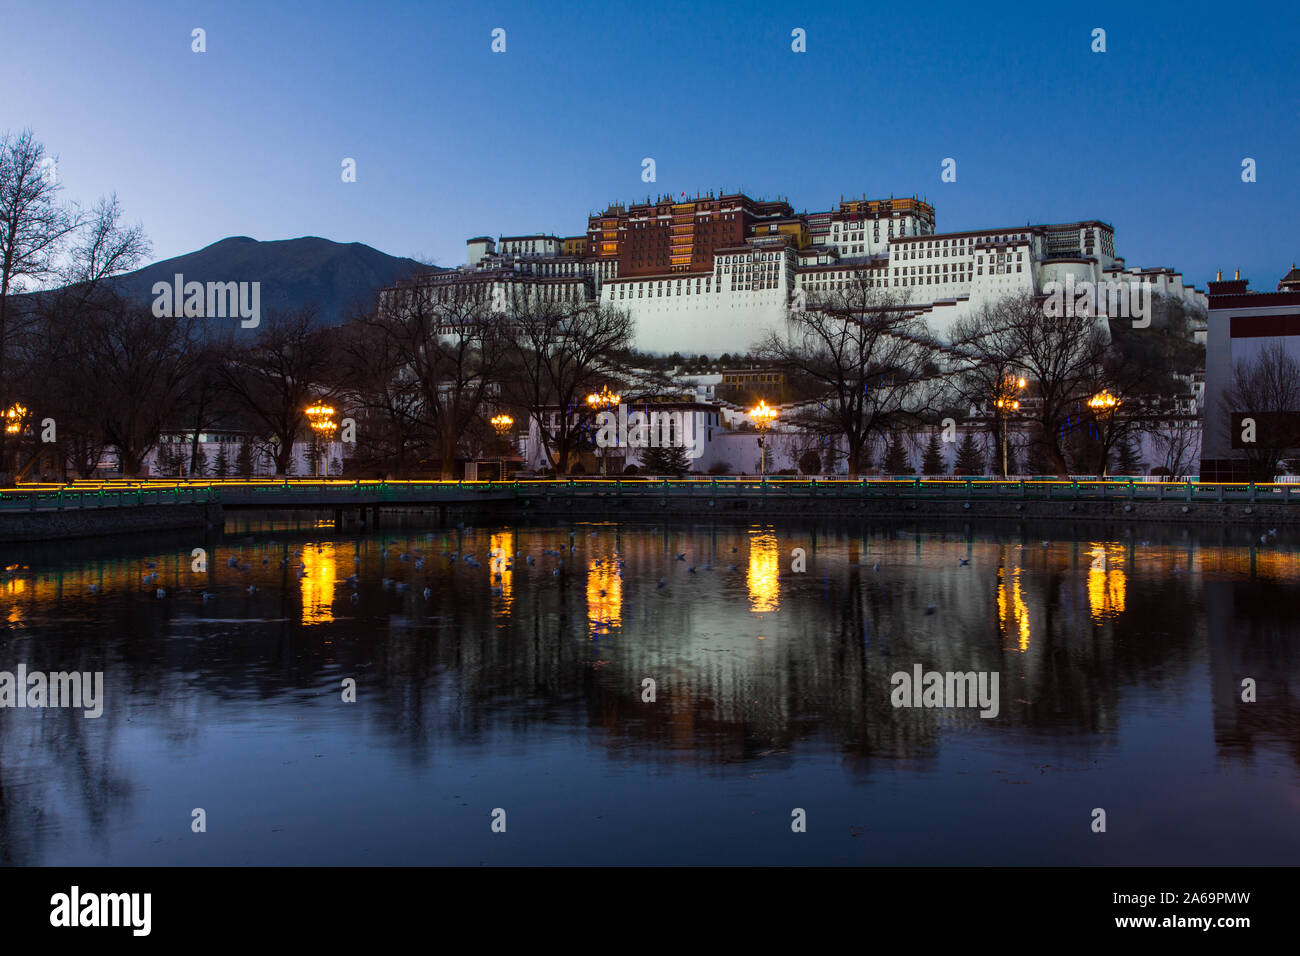 Riflessioni del Potala al crepuscolo serale a Lhasa, in Tibet. Ex palazzo d'inverno del Dalai Lama e ora un sito Patrimonio Mondiale dell'UNESCO. Foto Stock